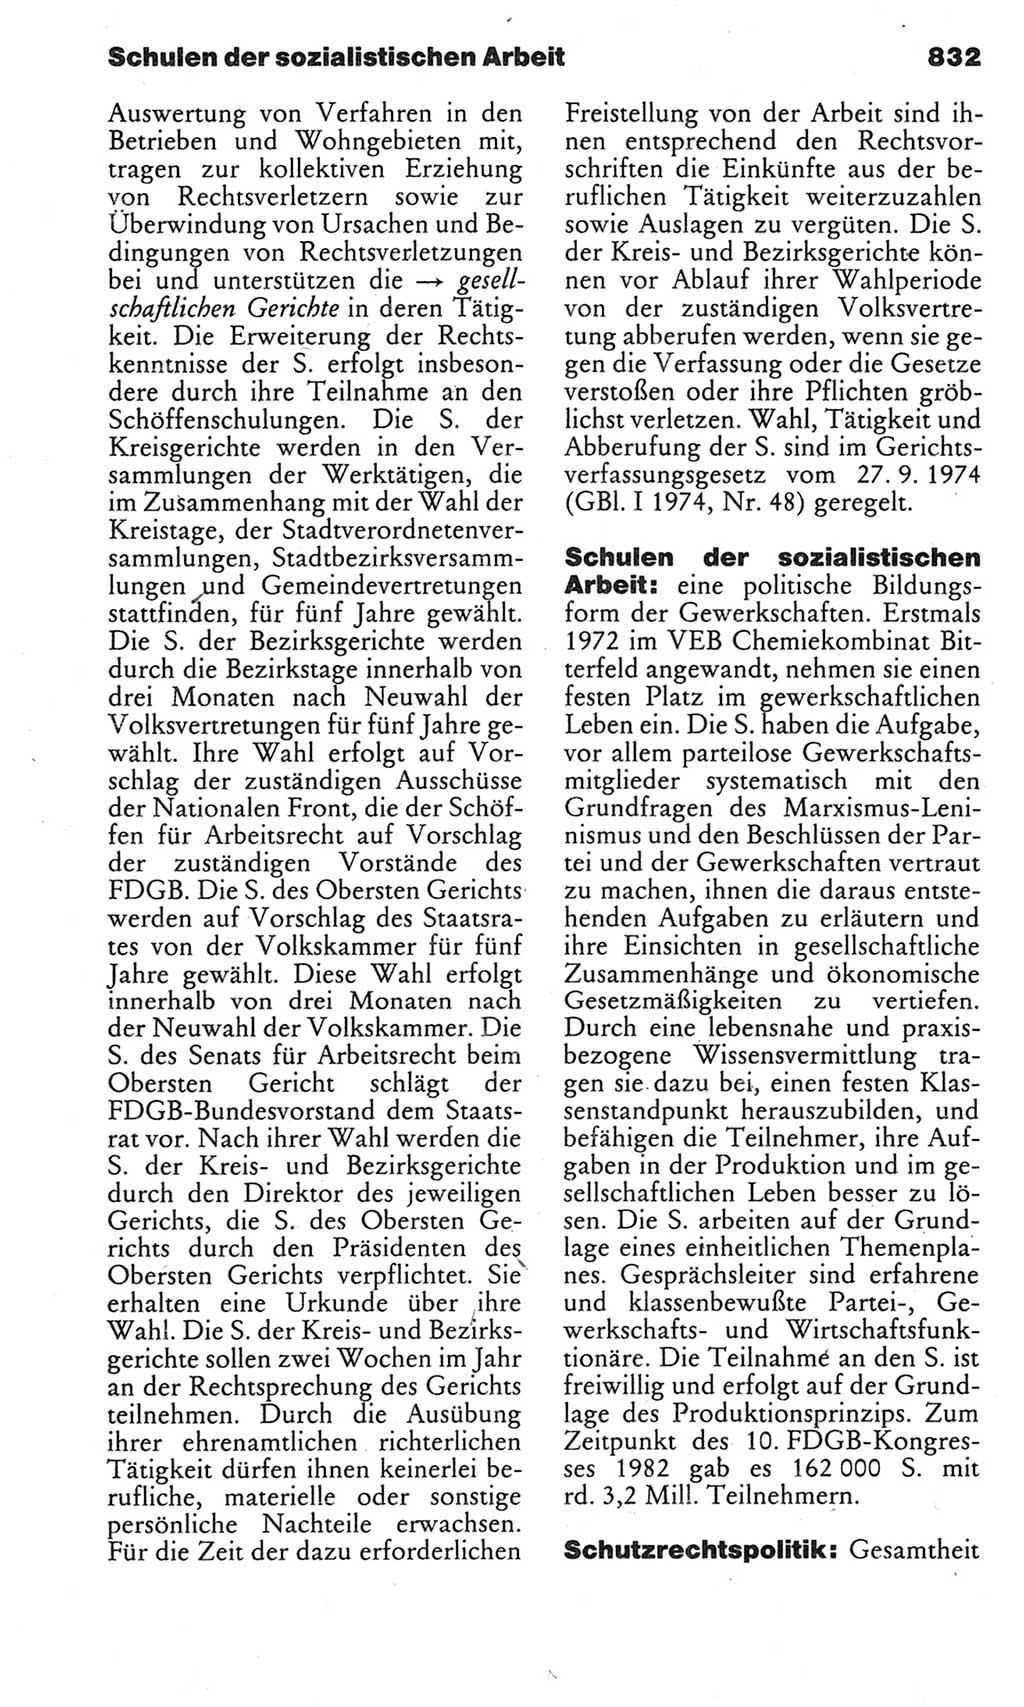 Kleines politisches Wörterbuch [Deutsche Demokratische Republik (DDR)] 1983, Seite 832 (Kl. pol. Wb. DDR 1983, S. 832)